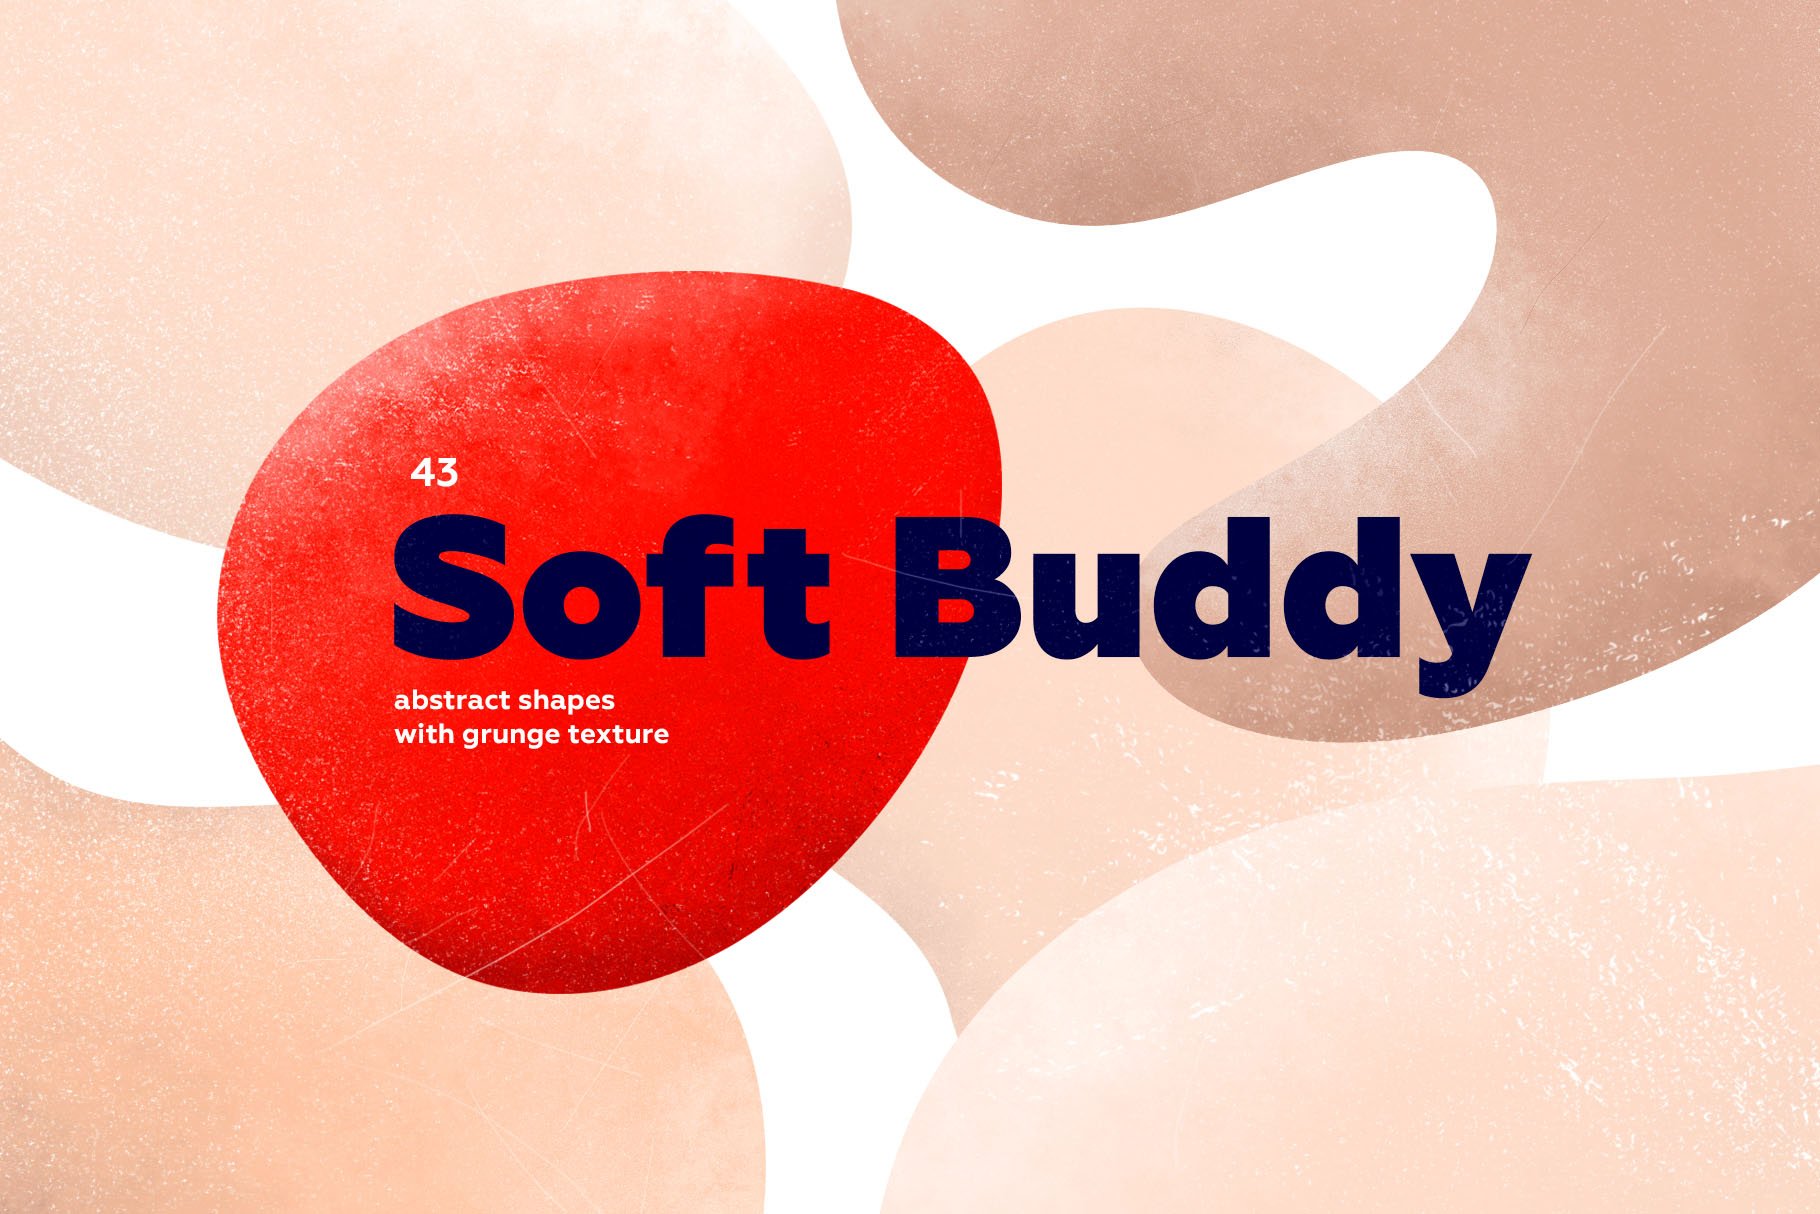 孟菲斯有机抽象水彩元素合集包 Soft Buddy - Ab